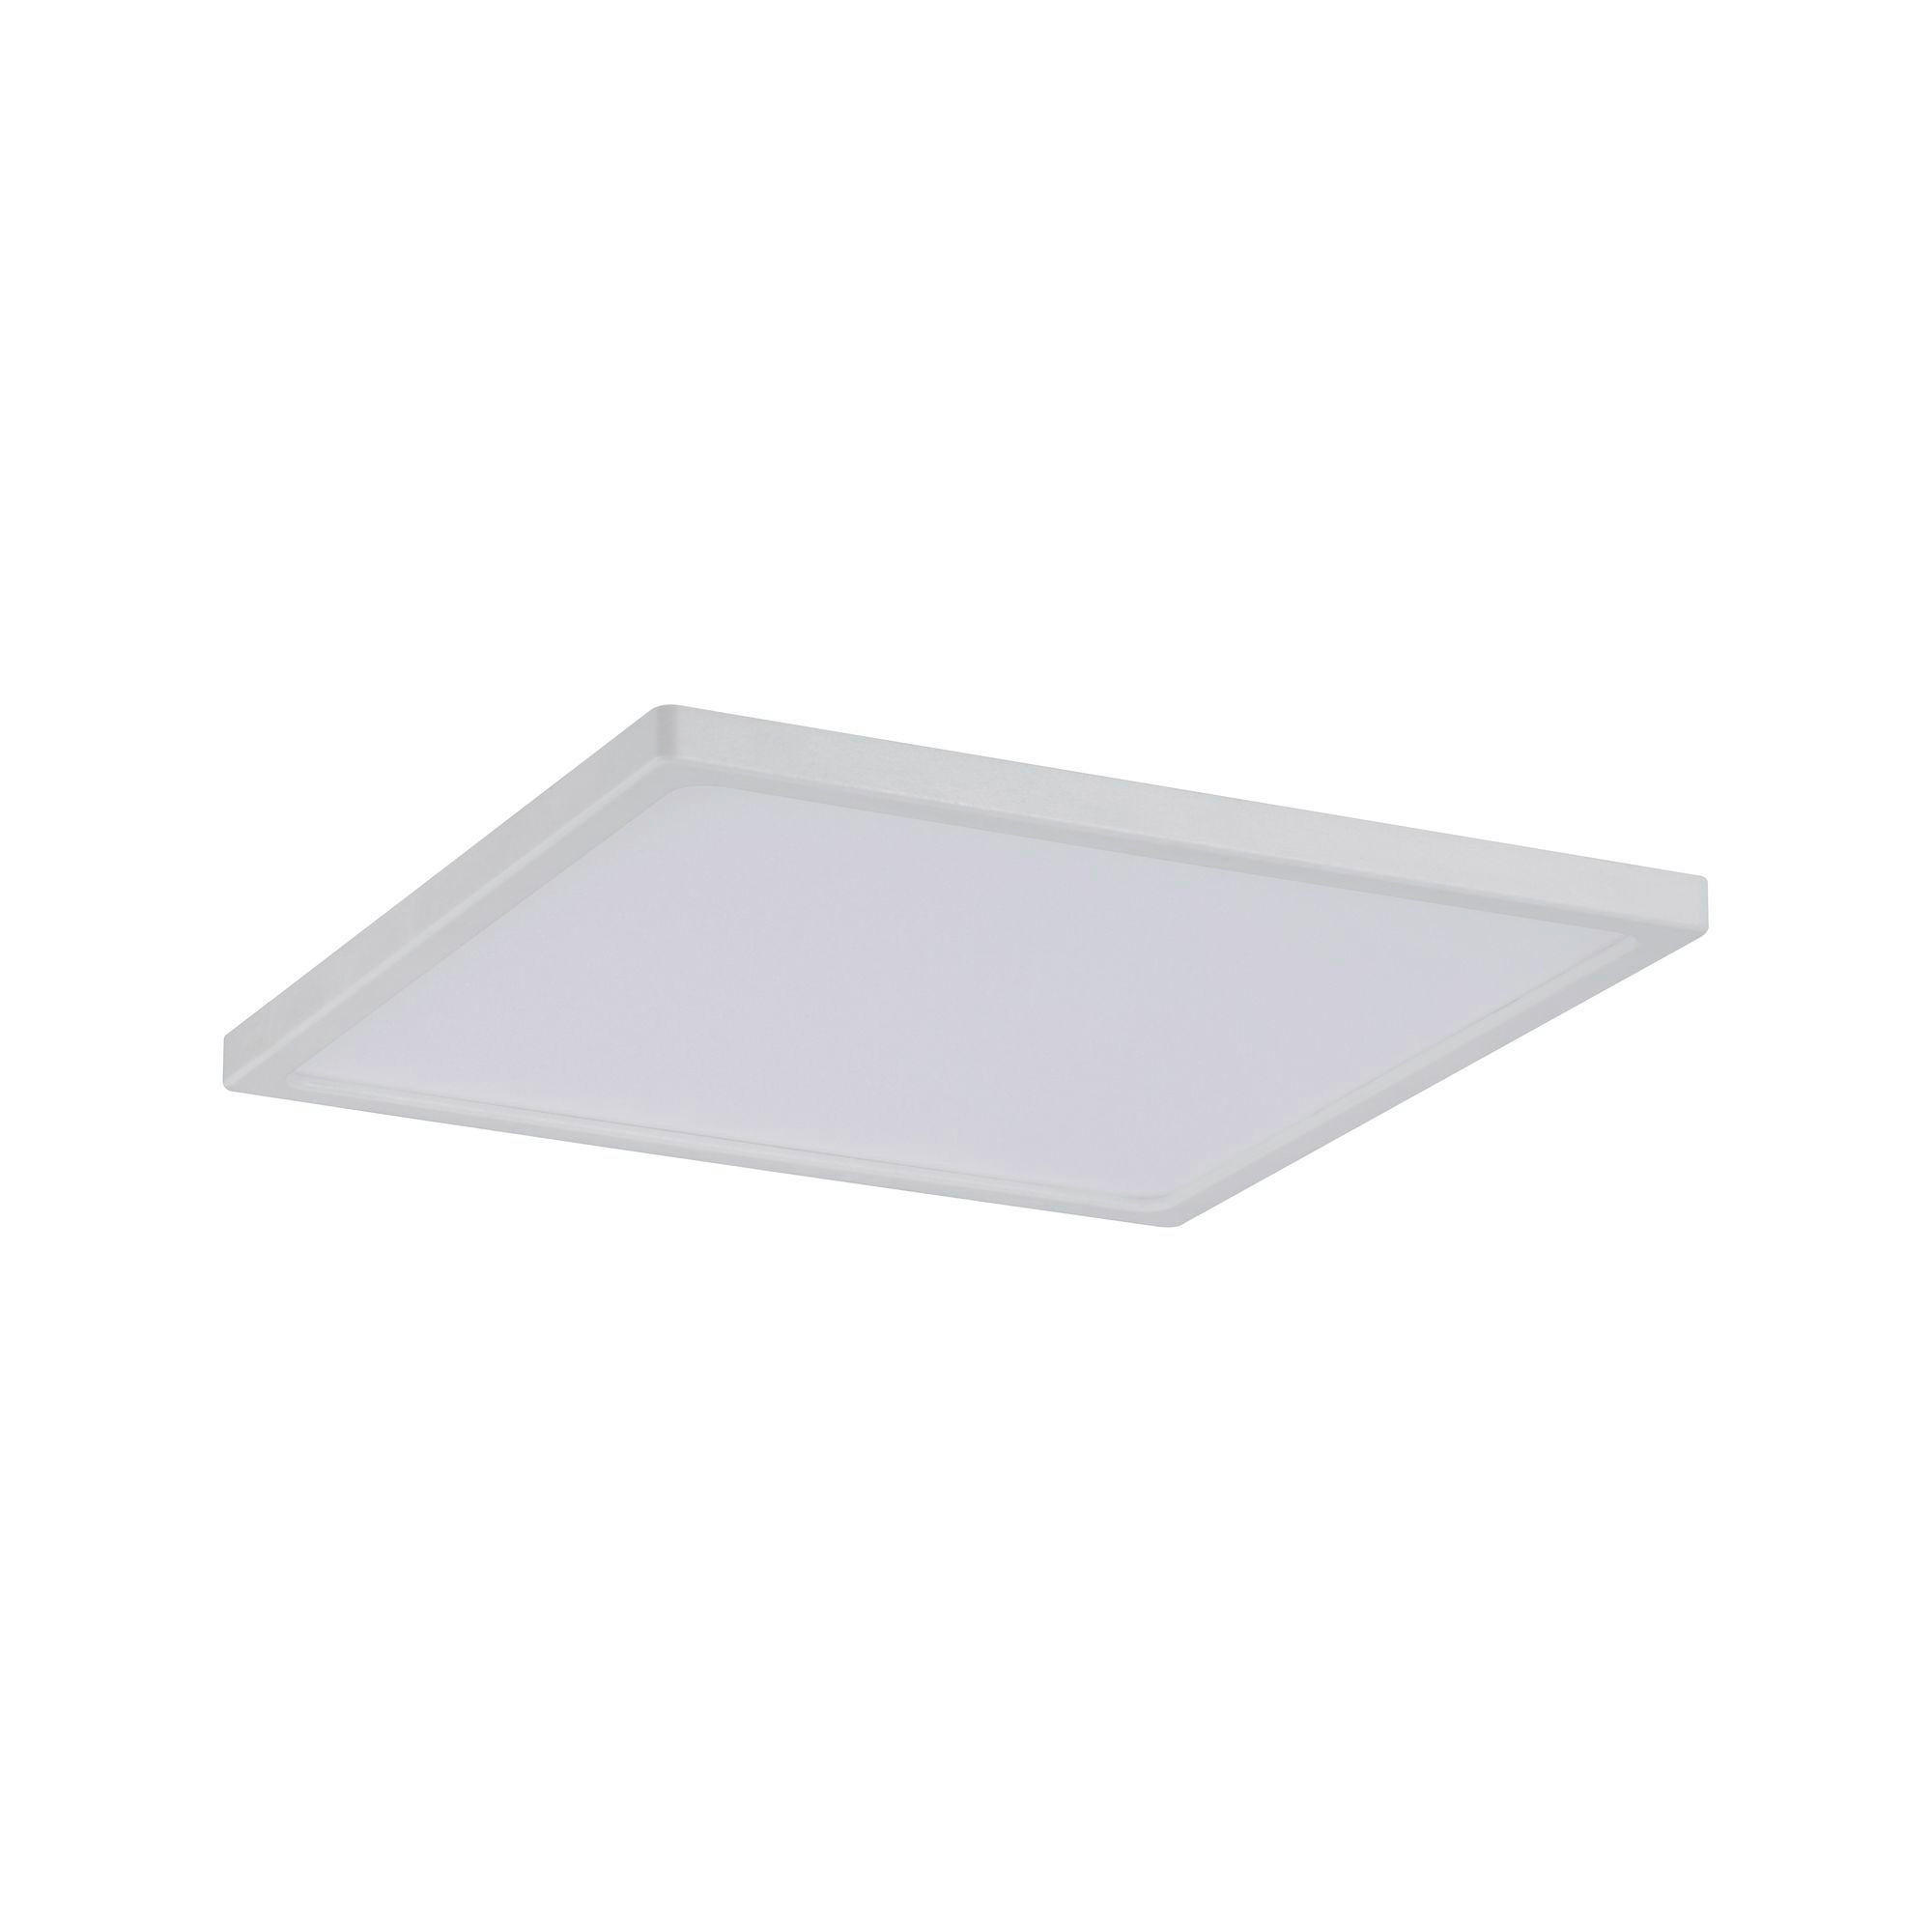 LED-PANEEL  - Weiß, Basics, Kunststoff (12/12cm) - Paulmann